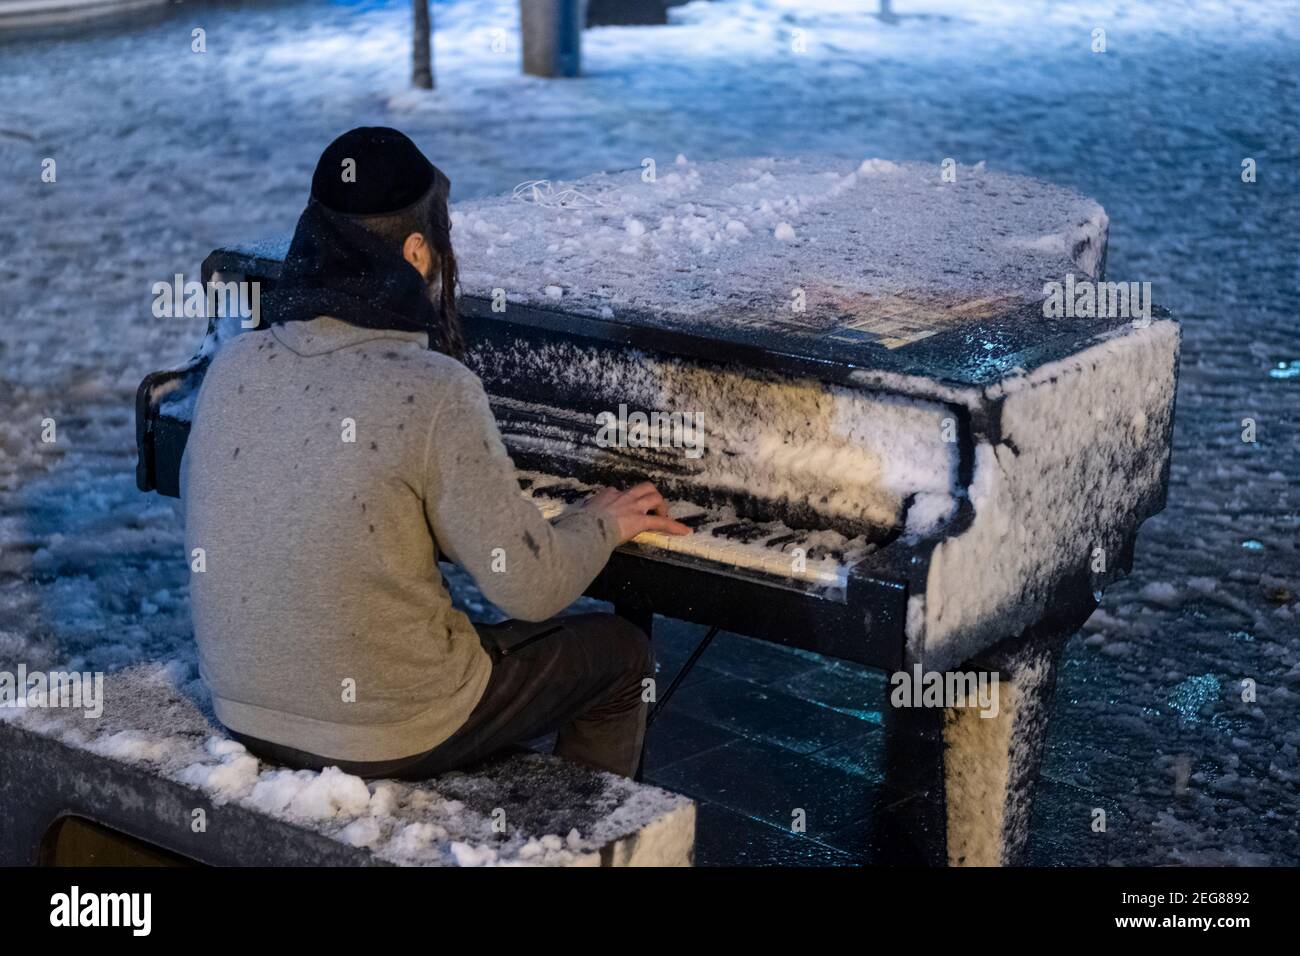 JERUSALEM, ISRAEL - FEBRUAR 17: Ein junger orthodoxer jüdischer Mann spielt am Zion-Platz Klavier, während Schneefall am 17. Februar 2020 in Jerusalem, Israel. Jerusalem bedeckt durch ersten Schnee in sechs Jahren erreicht sieben bis 10 Zentimeter (drei bis vier Zoll) über Nacht. Stockfoto